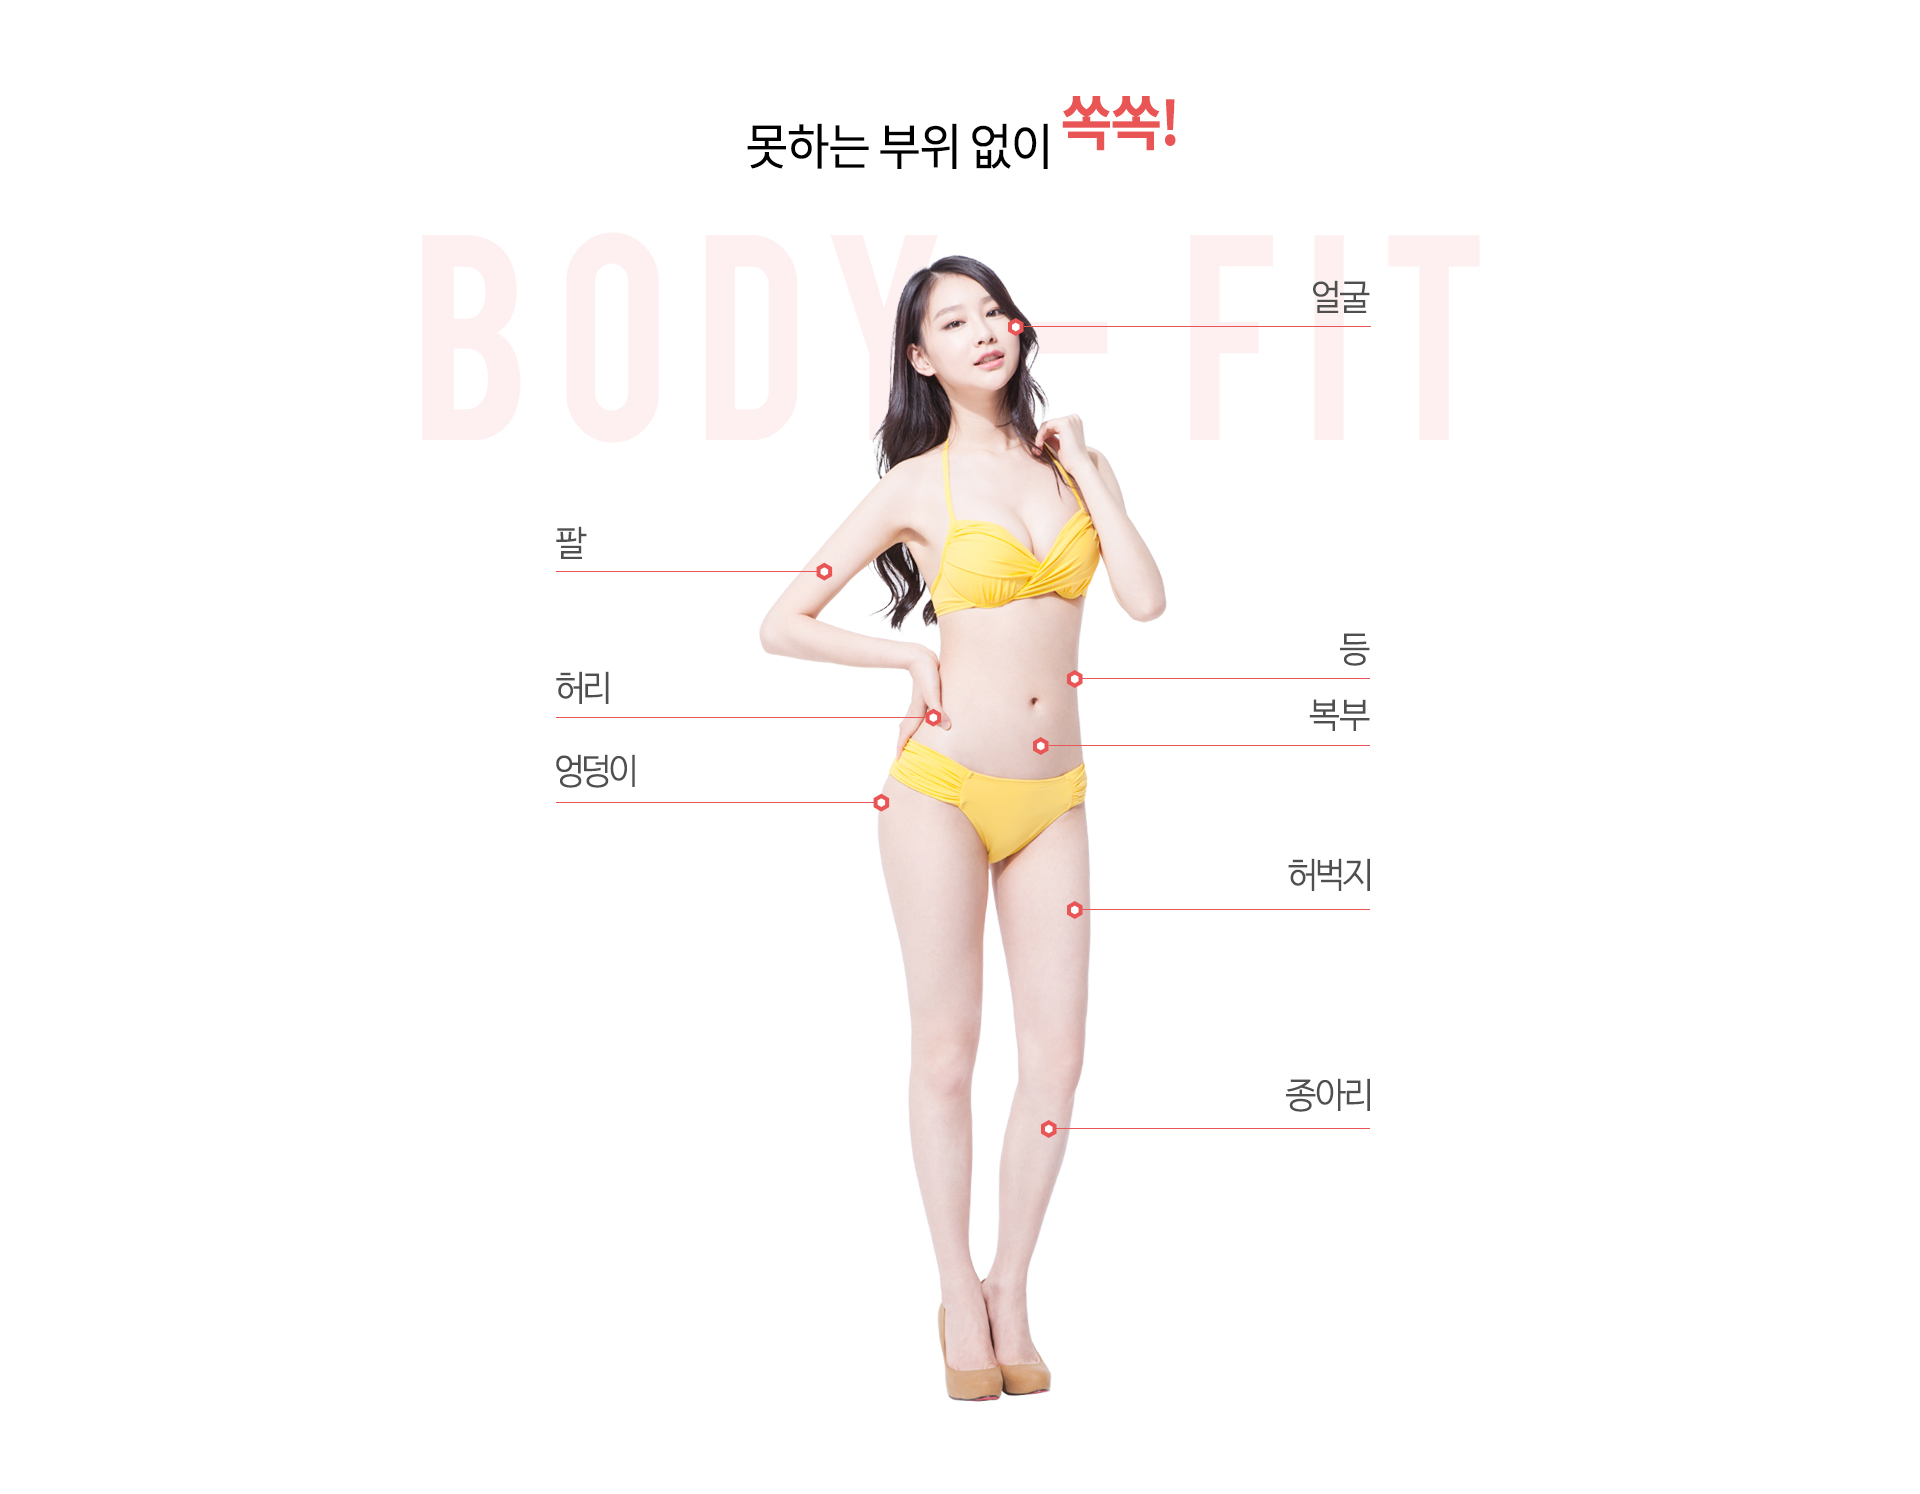 지방흡입부위 얼굴, 팔,허리,엉덩이,등,복부,허벅지,종아리